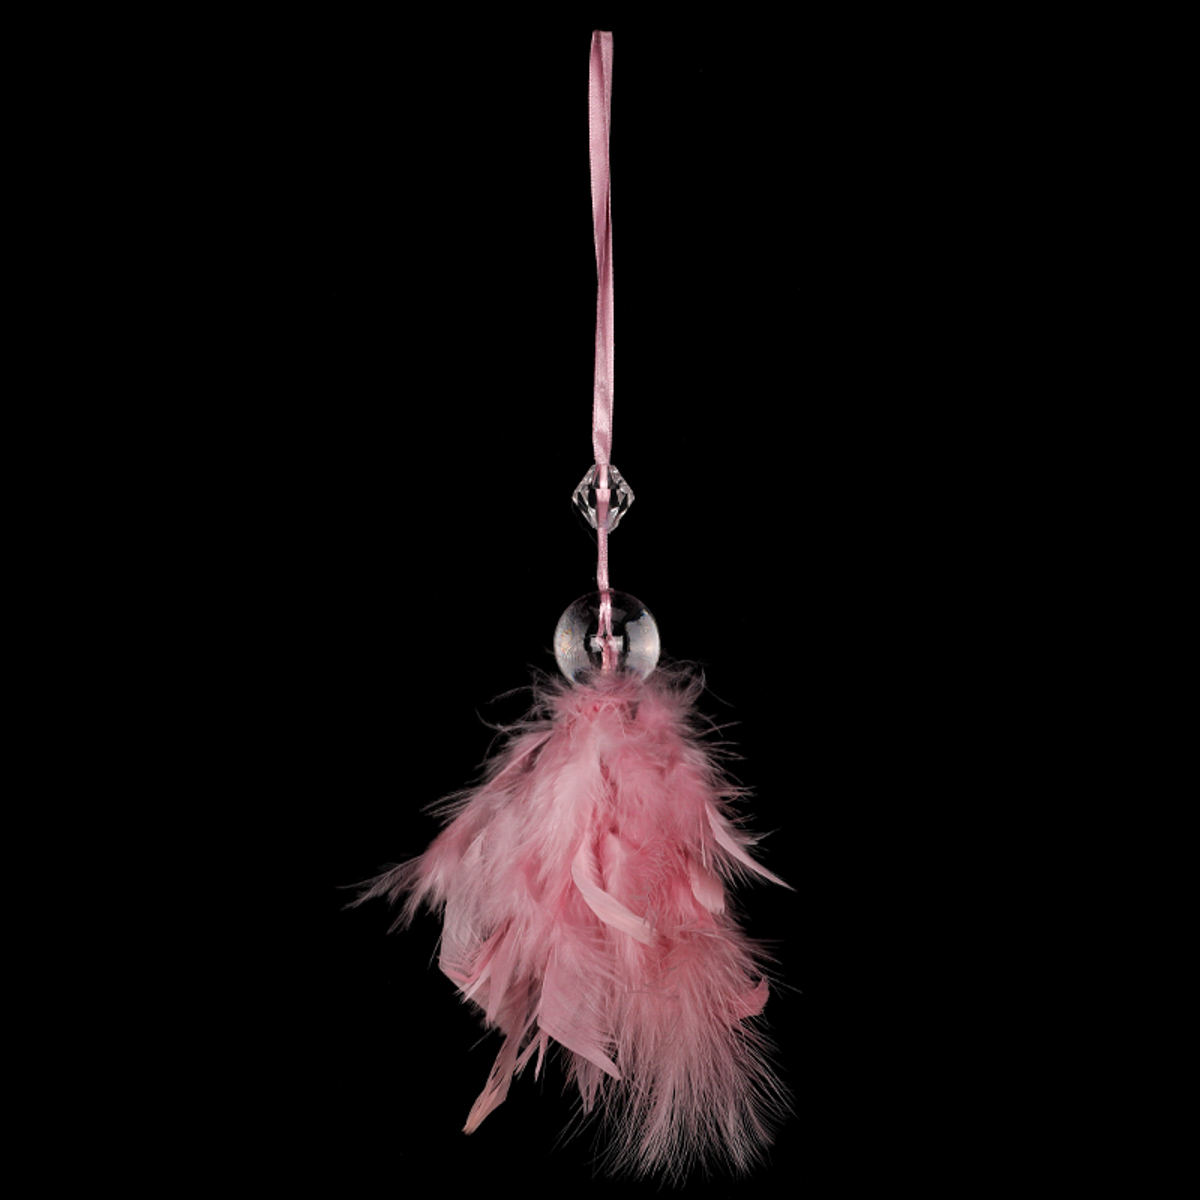 Andělíček z peří, závěsný,  barva růžová, 6 ks v polybagu Cena za 1 ks